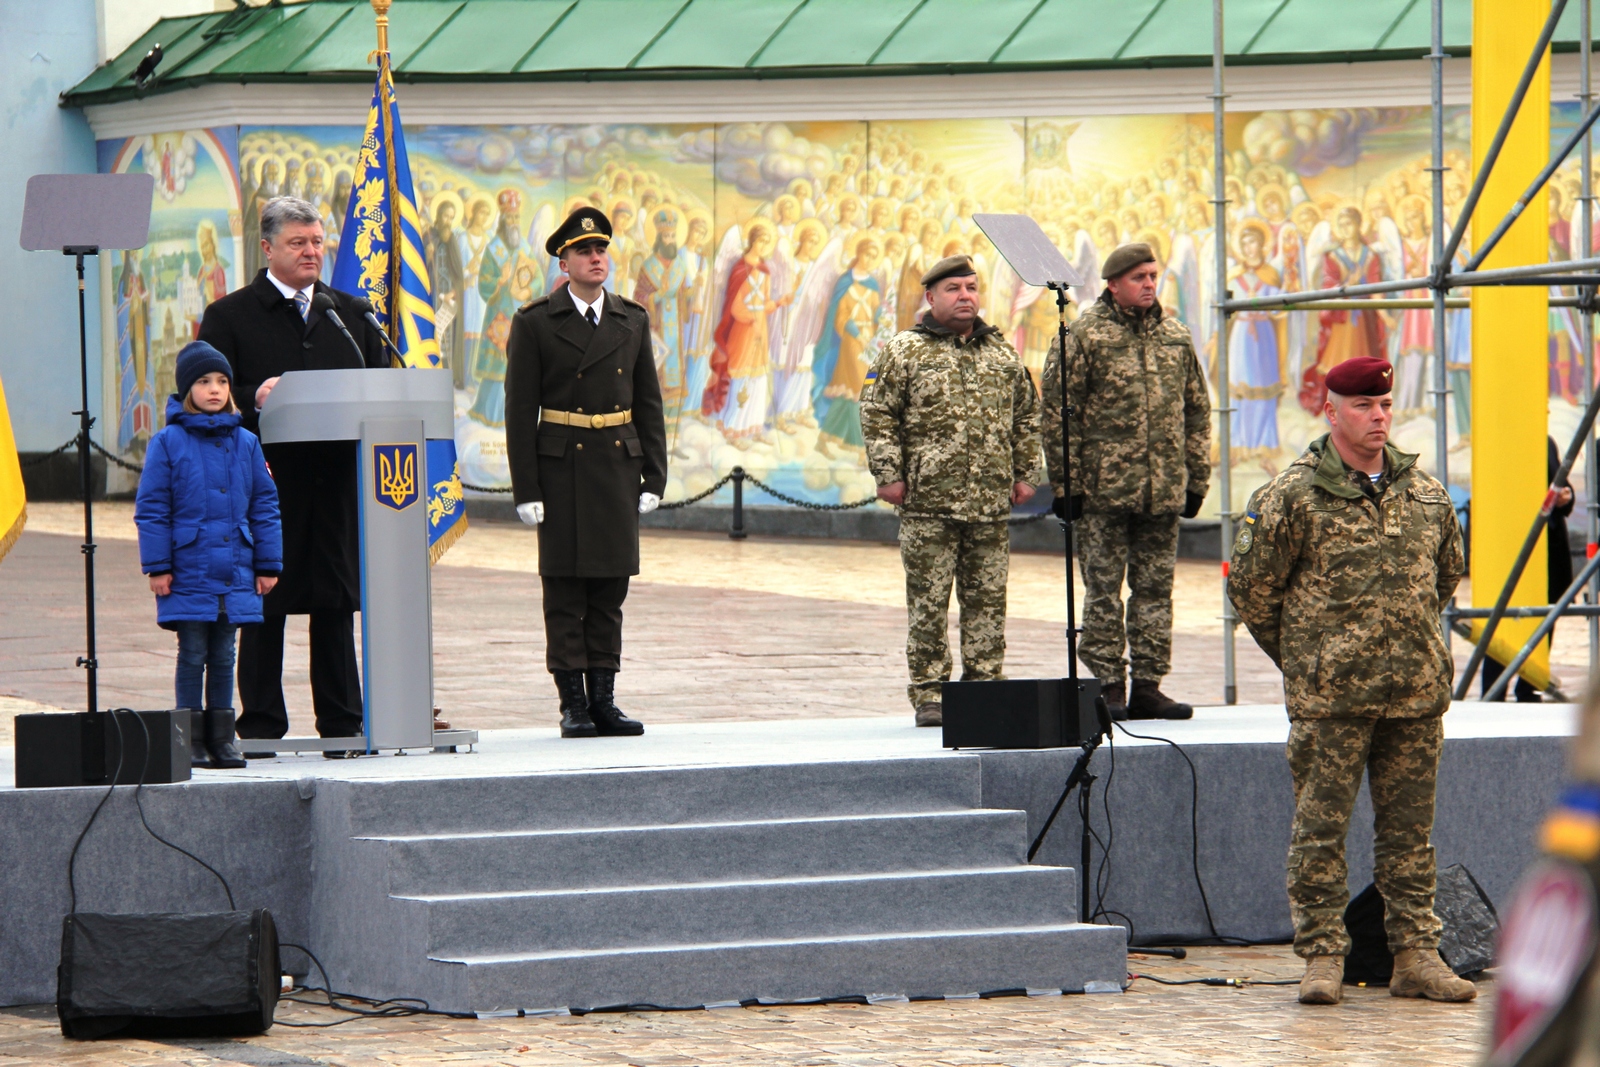 Про це Президент повідомив під час урочистої церемонії перейменування Високомобільних десантних військ у Десантно-штурмові війська Збройних Сил України.